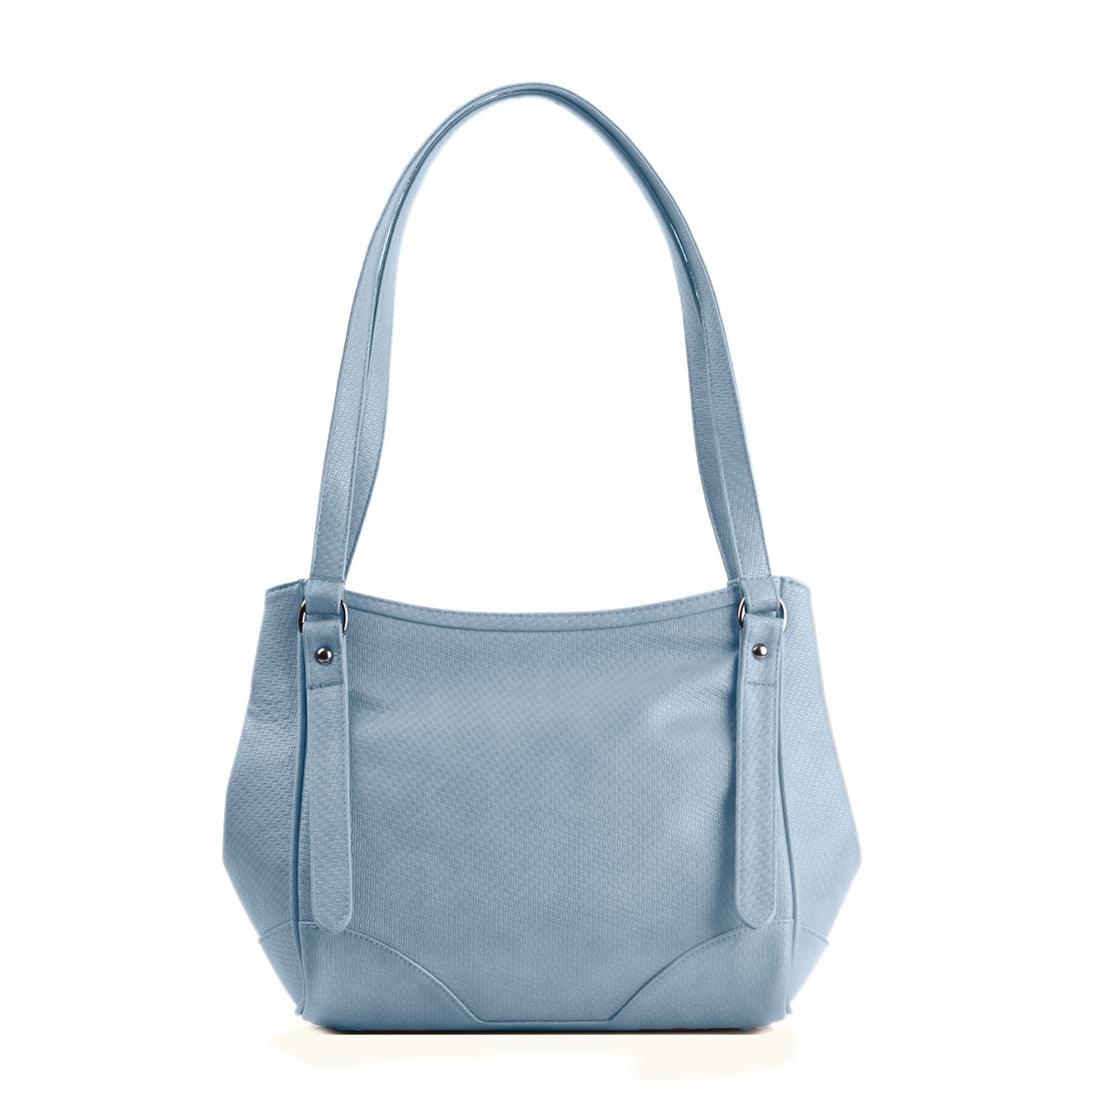 Blue Leather Tote Bag Doggo - CANVAEGYPT